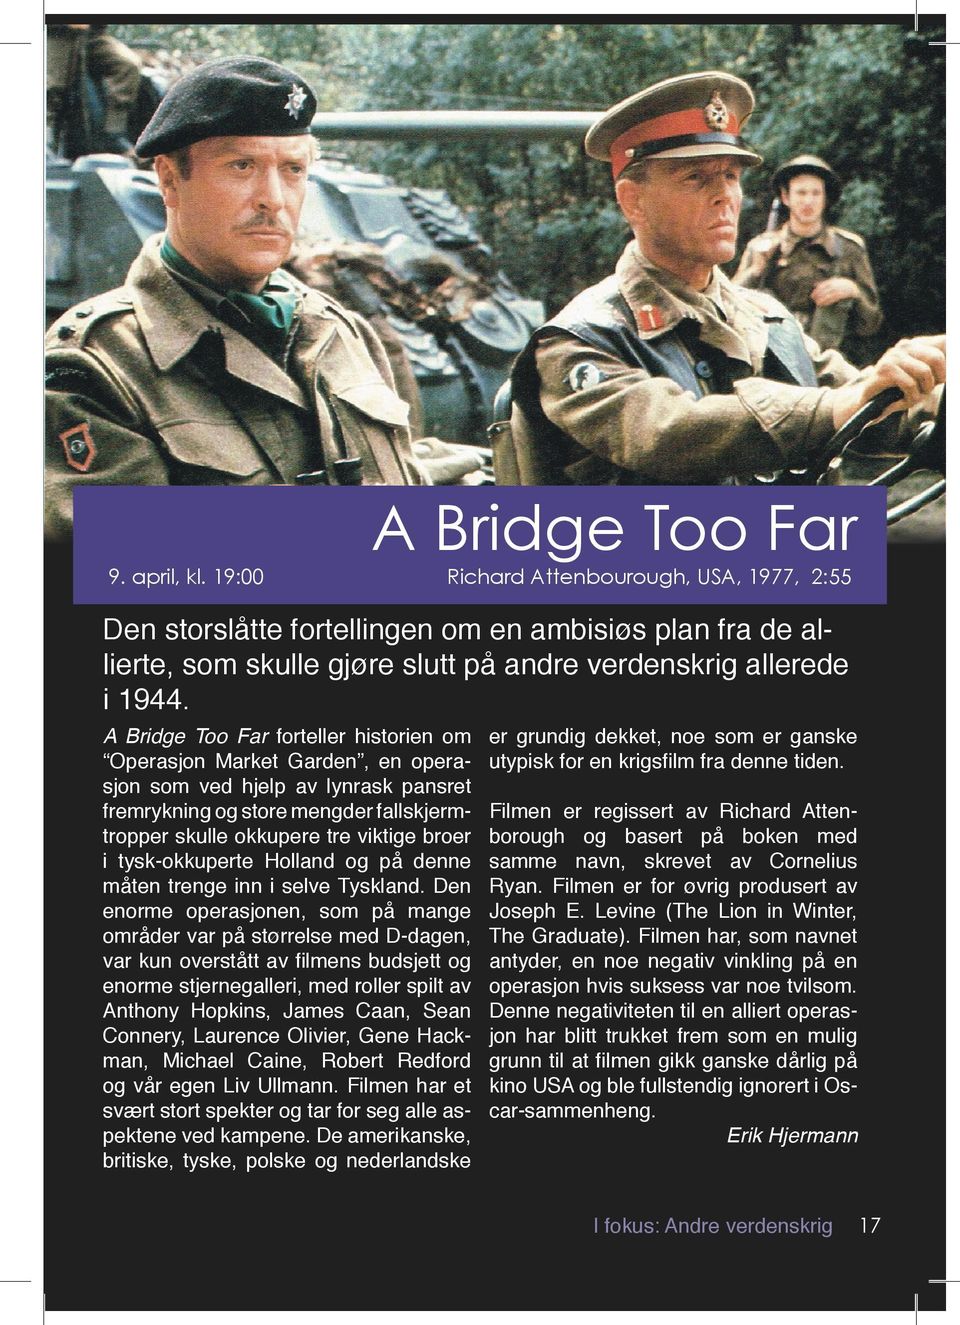 A Bridge Too Far forteller historien om Operasjon Market Garden, en opera sjon som ved hjelp av lynrask pansret fremrykning og store mengder fallskjerm tropper skulle okkupere tre viktige broer i